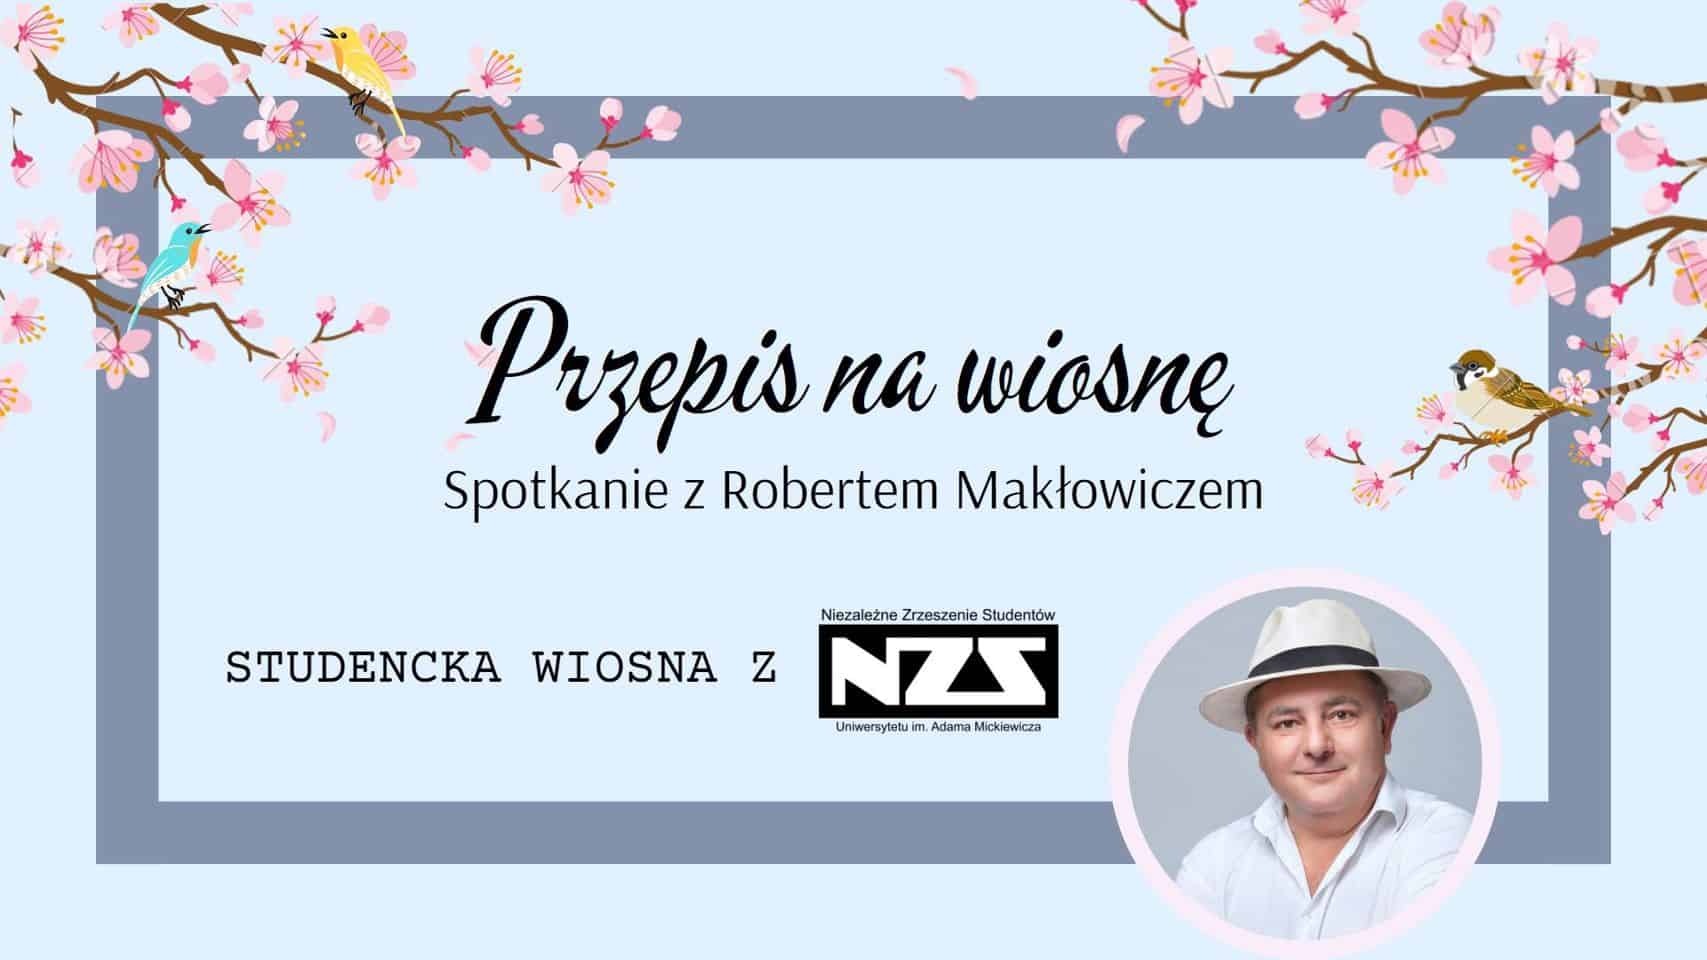 Przepis na wiosnę, czyli spotkanie online z Robertem Makłowiczem